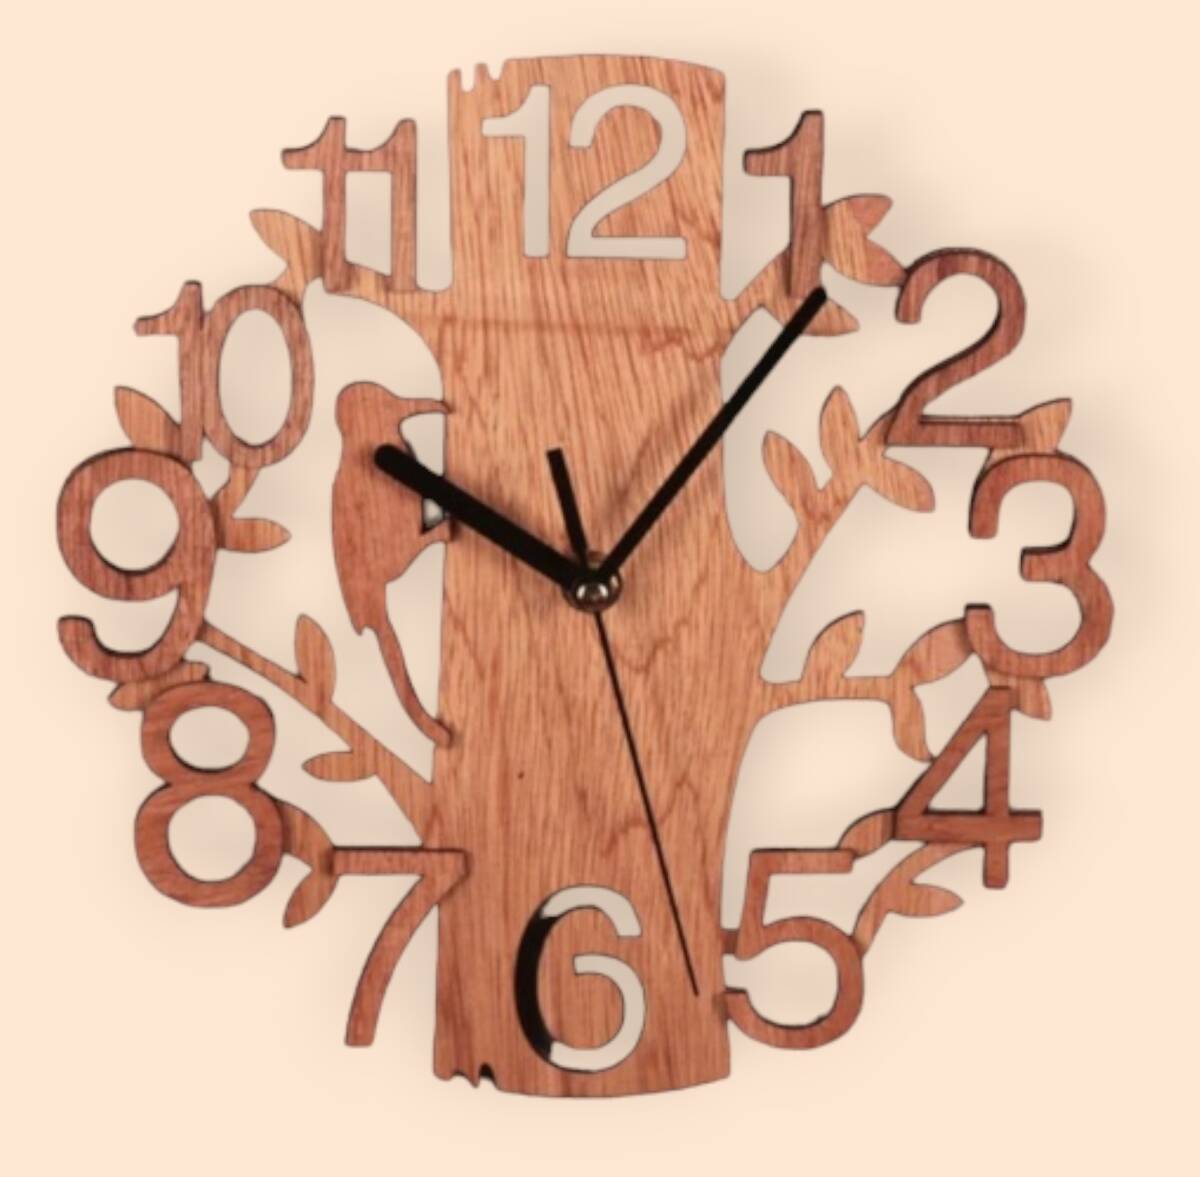 時計 鳥 掛け時計 壁掛け 木 自然 リビング ナチュラル 北欧  おしゃれ 静音 ウォールクロック 木製 オシャレ の画像1